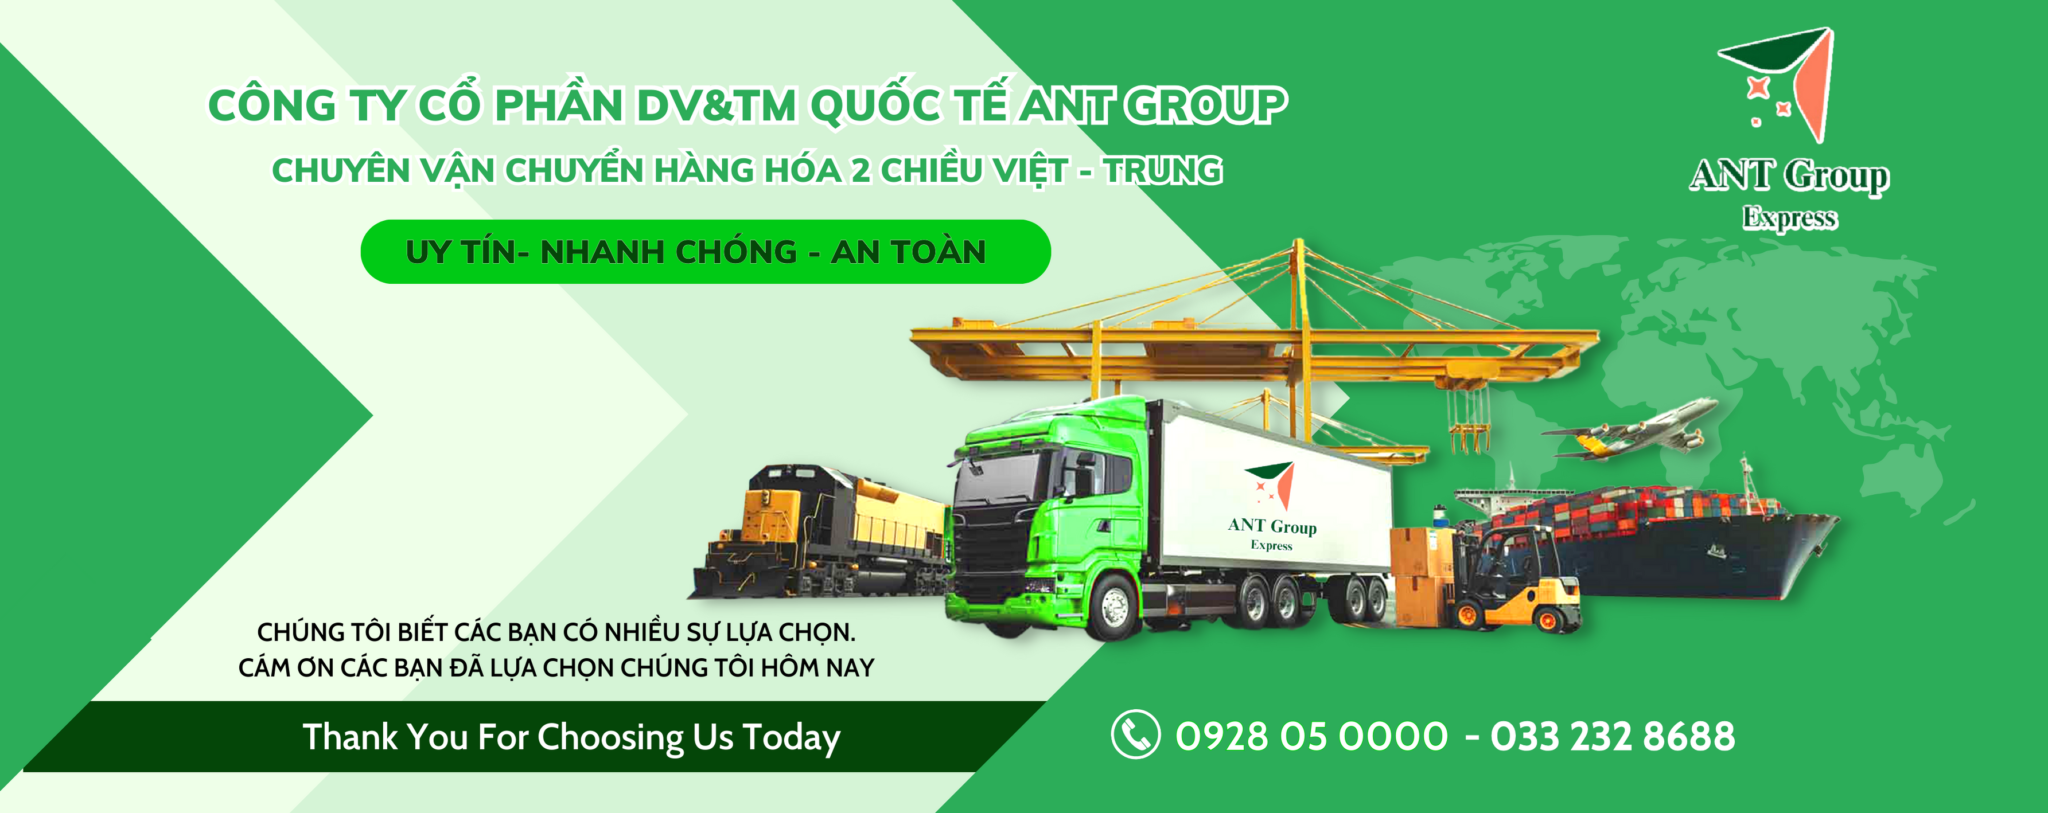 Vận chuyển hàng hóa từ Việt Nam sang Trung Quốc Cover Image